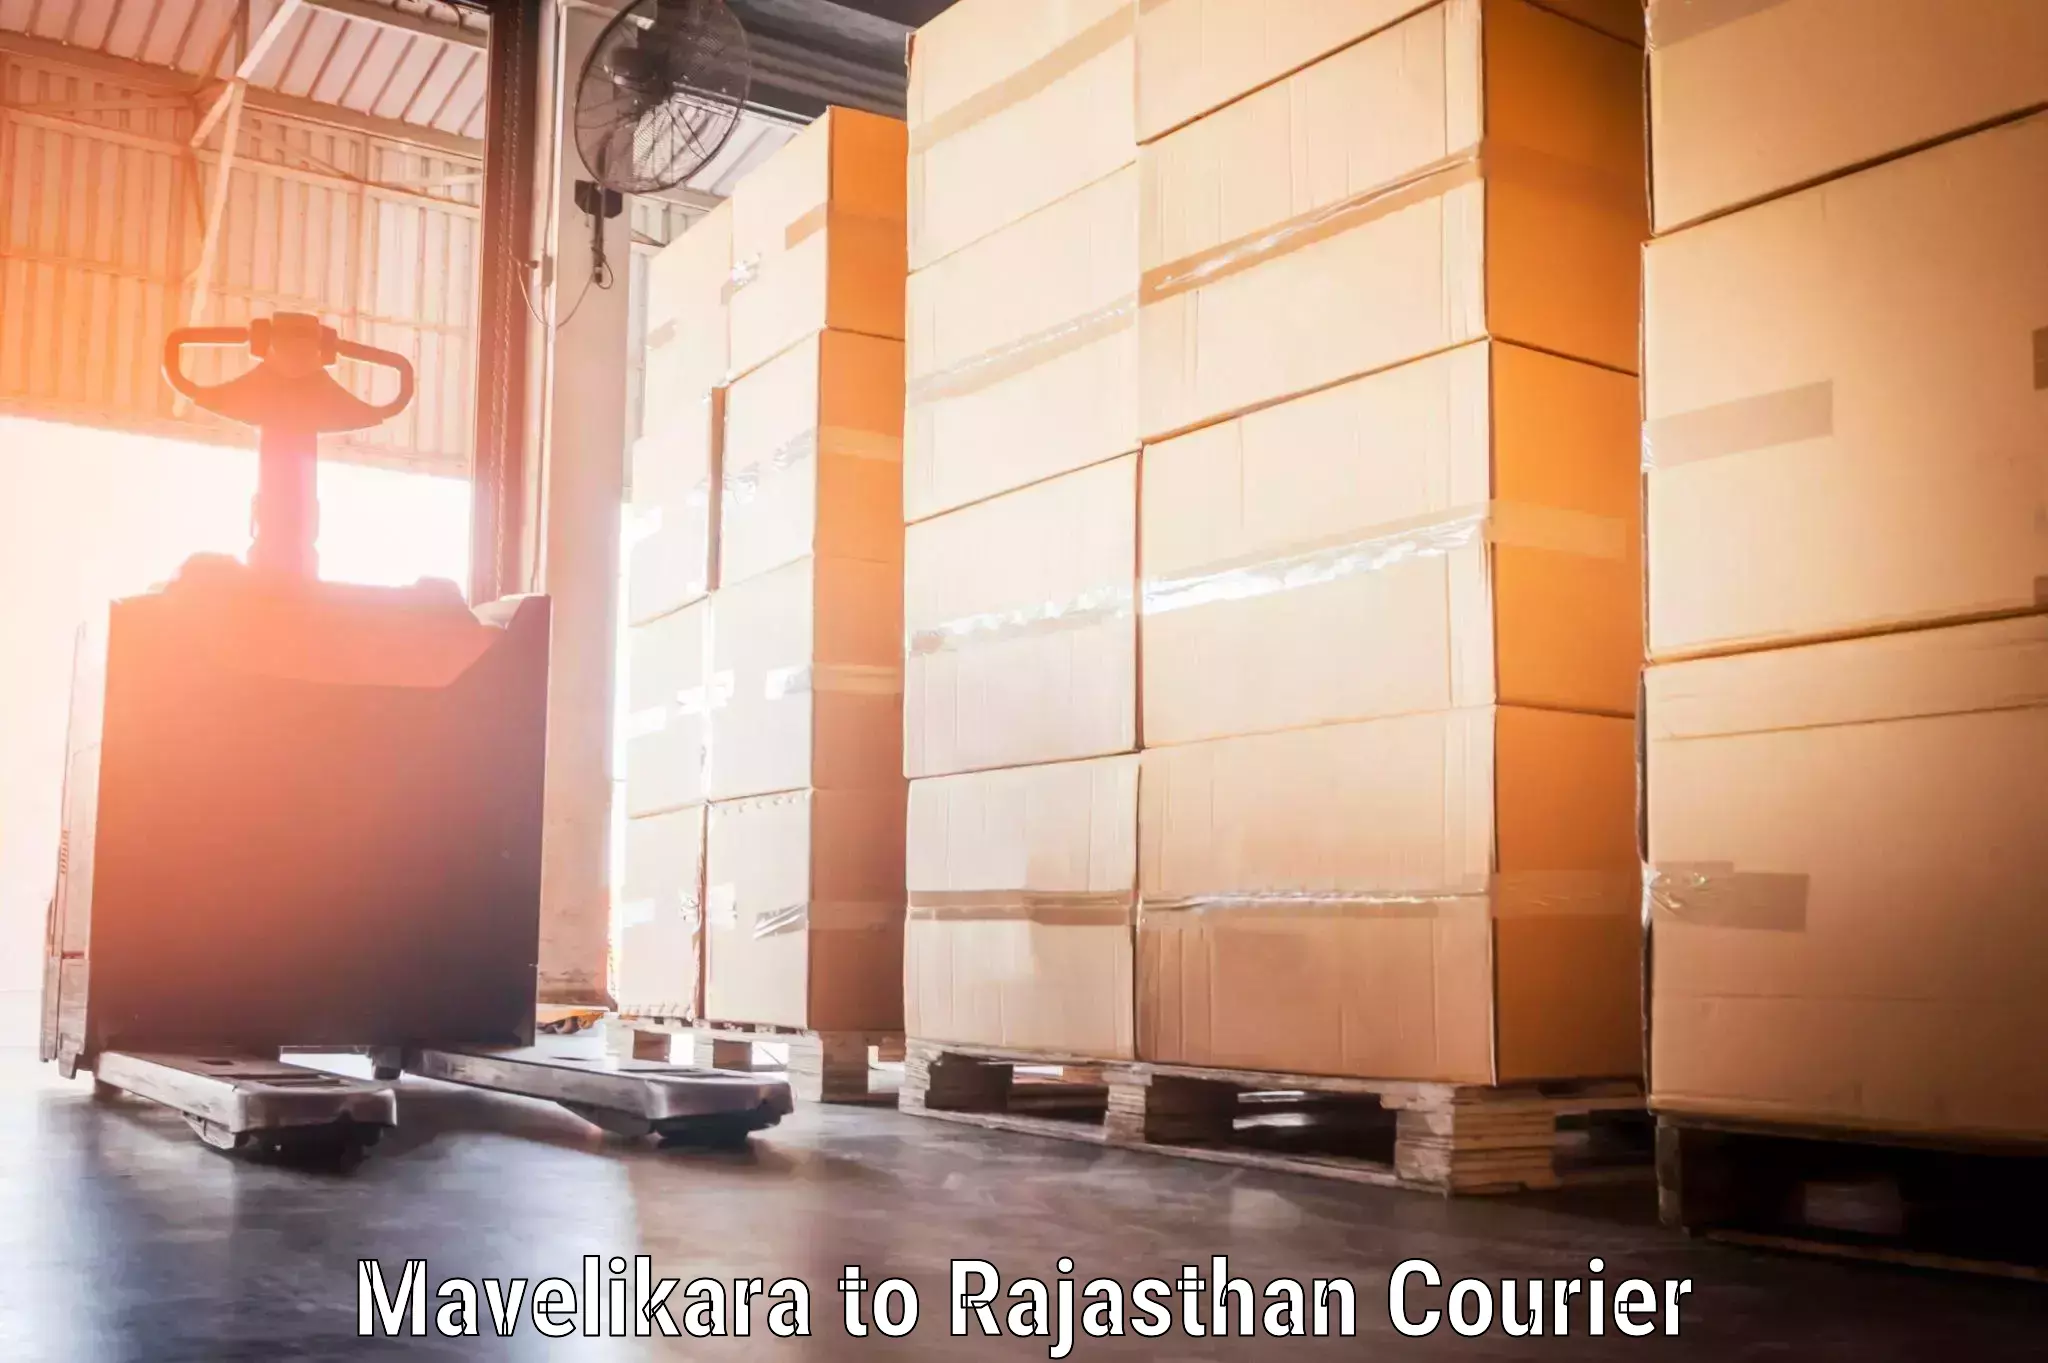 Baggage transport updates in Mavelikara to Rajasthan